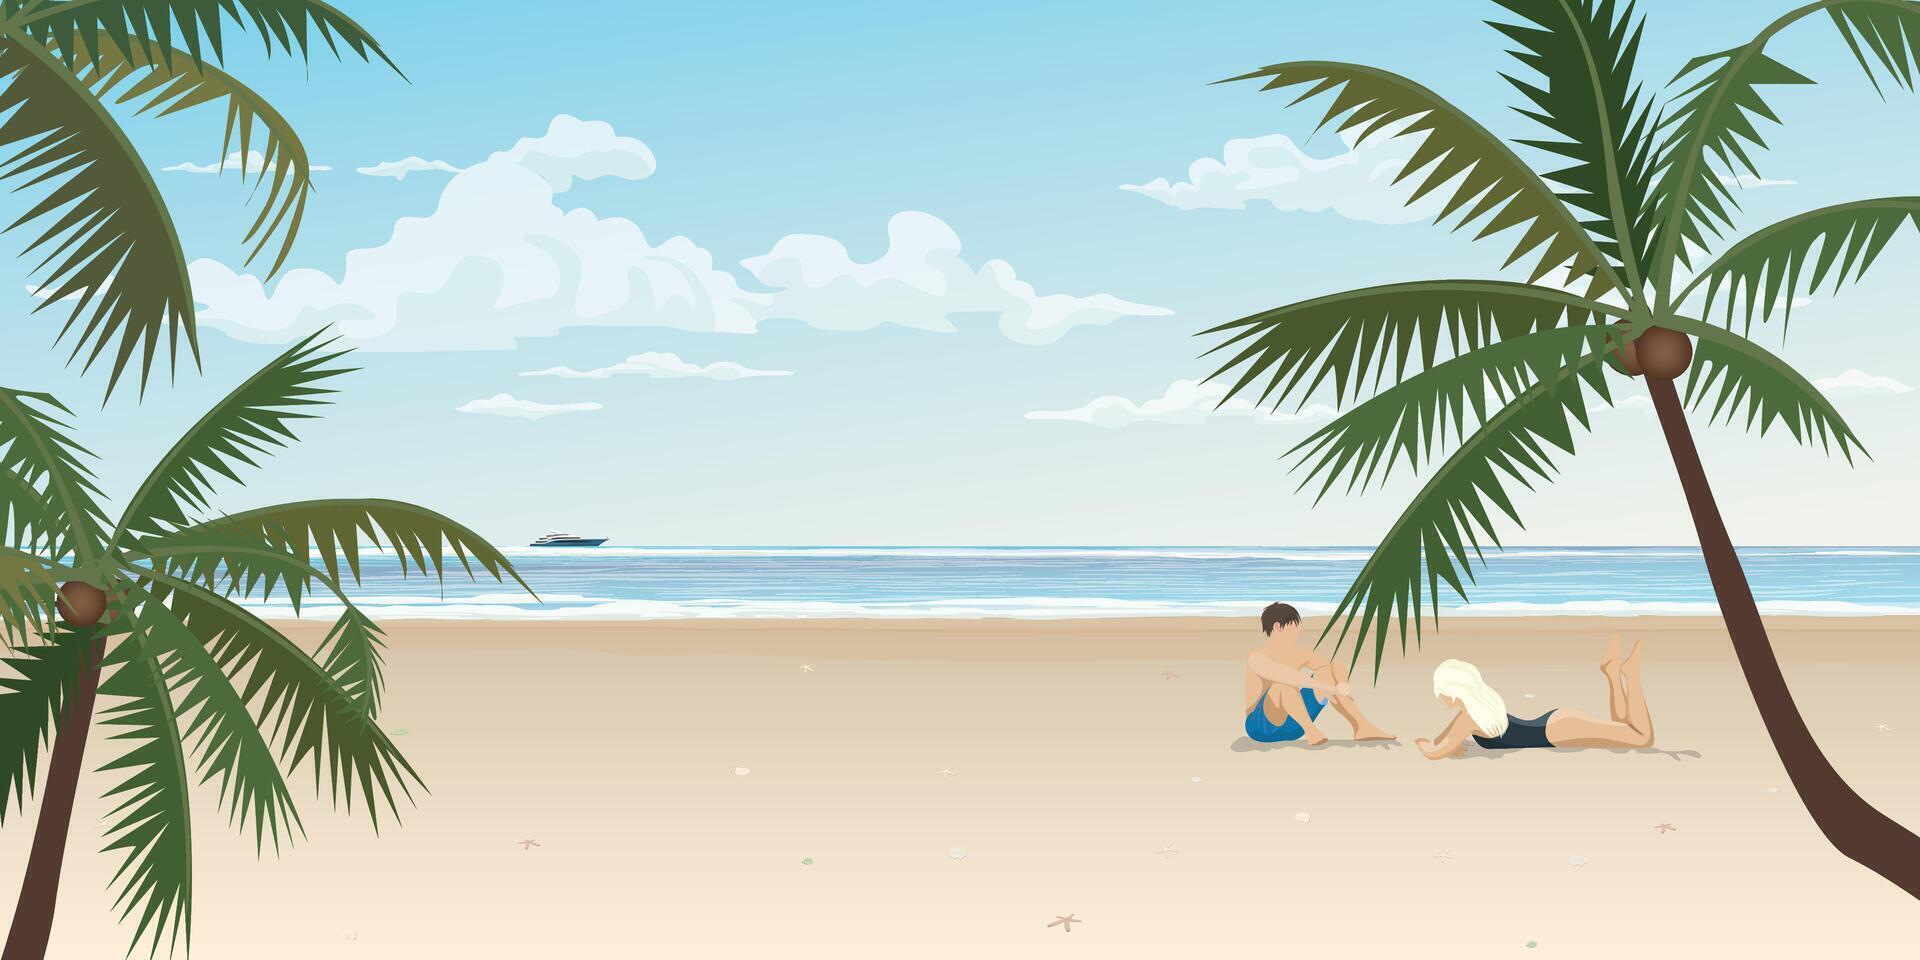 paar van minnaar Bij de strand en tropisch blauw zee vector illustratie. reis van Lieve schat concept vlak ontwerp.